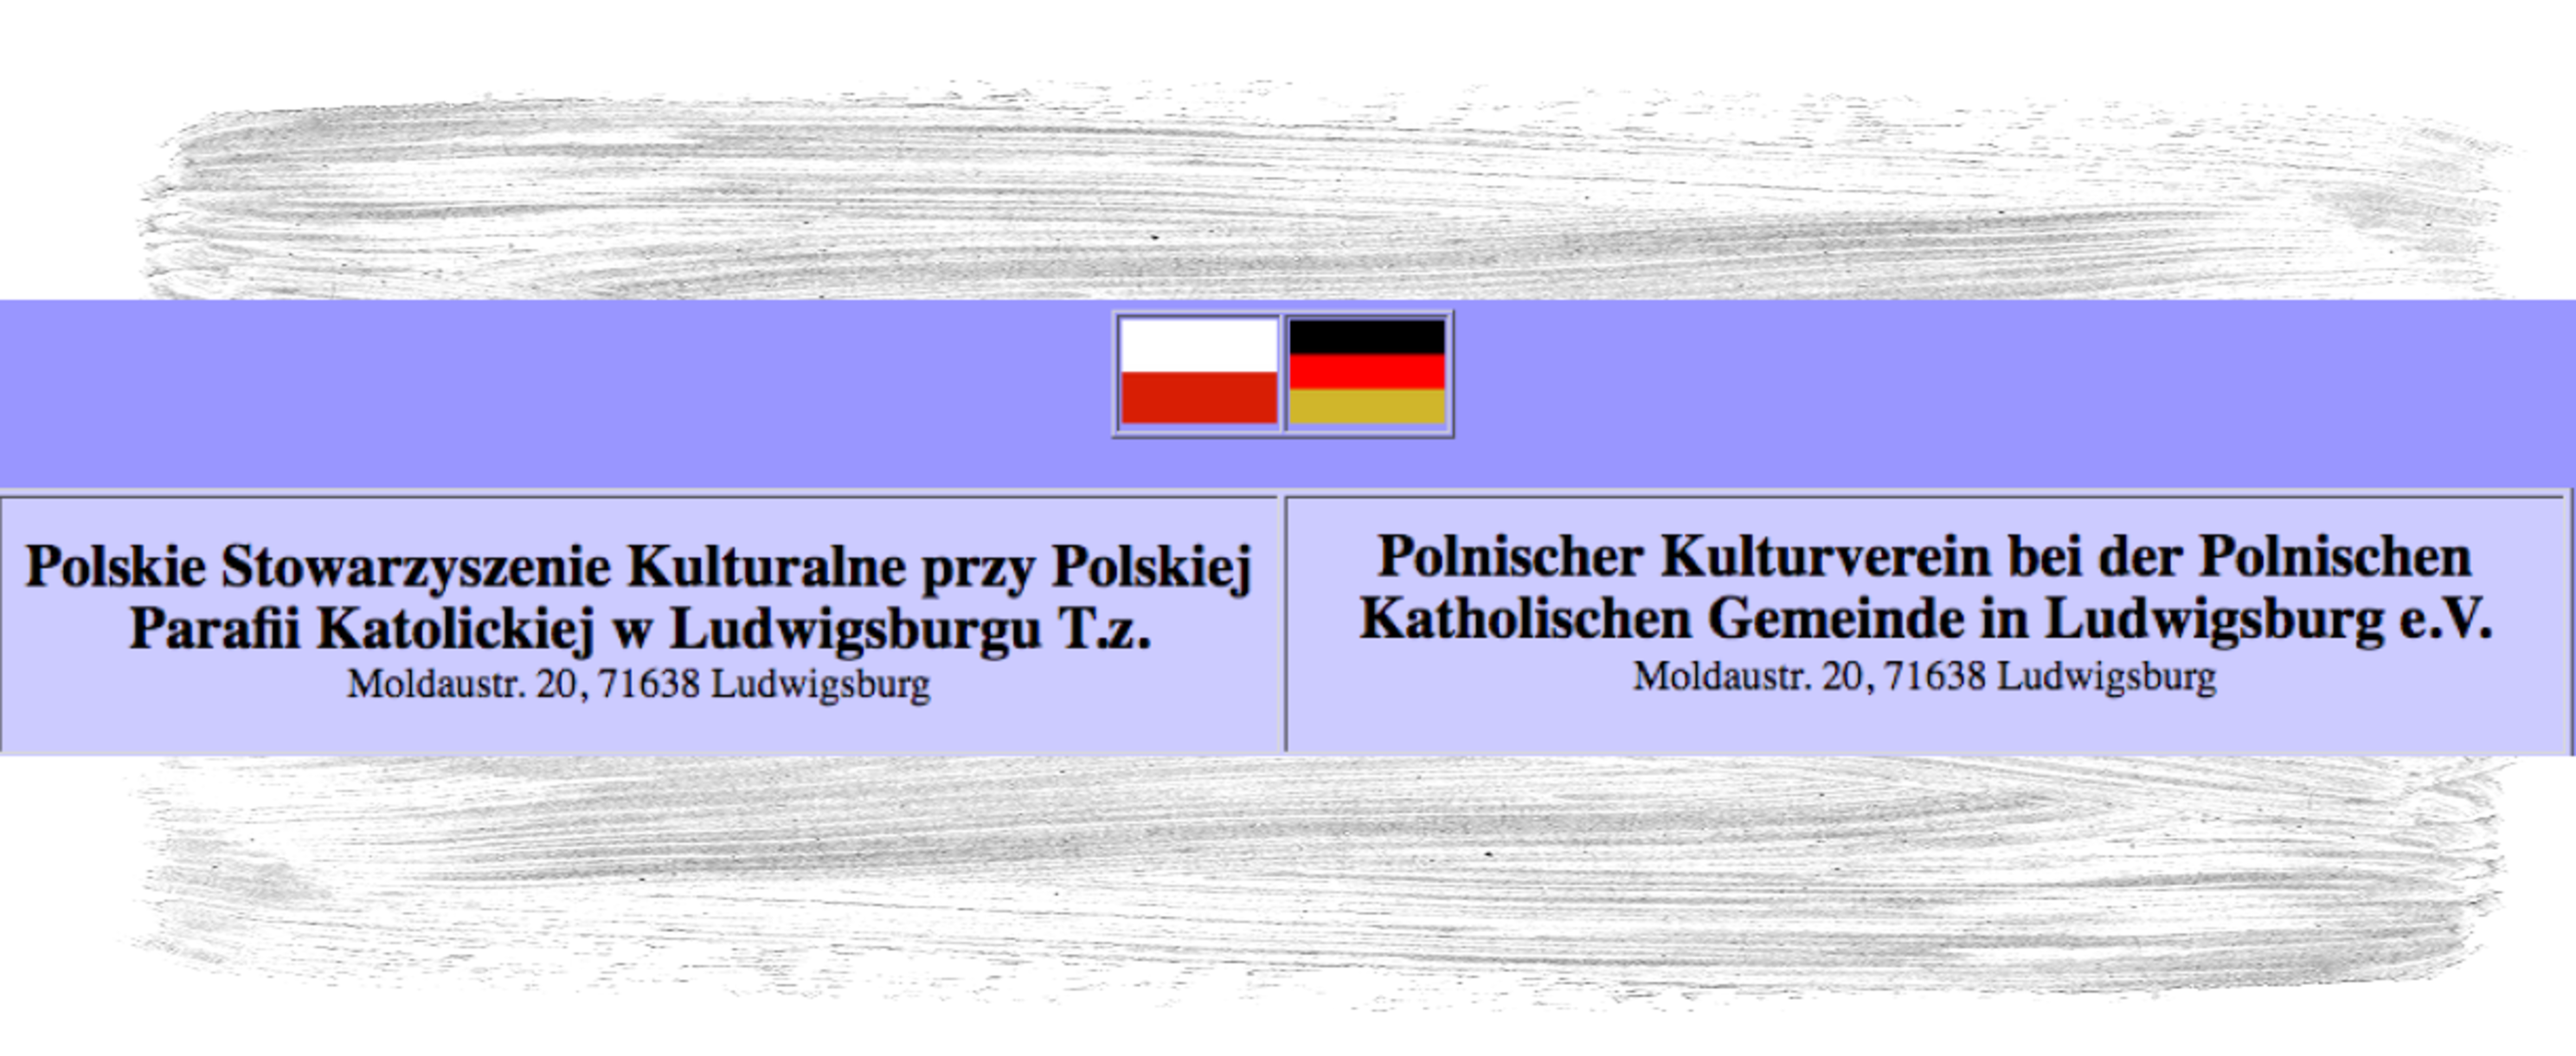 Polnischer Kulturverein bei der Polnischen Katholischen Gemeinde 